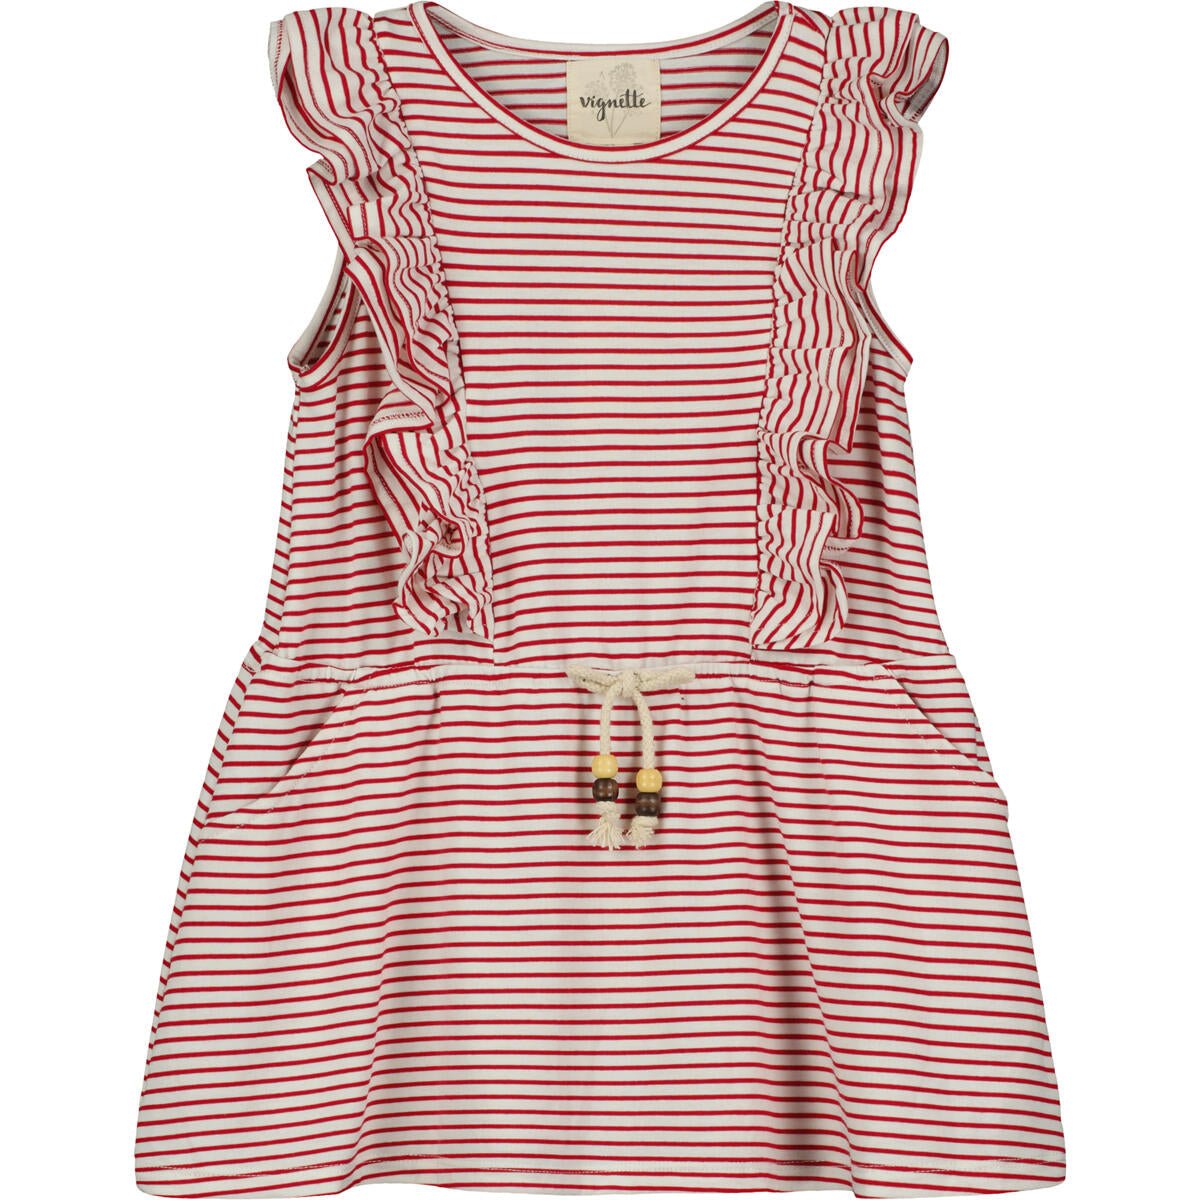 Vignette Girls Jo Dress - Ivory/Red Stripe